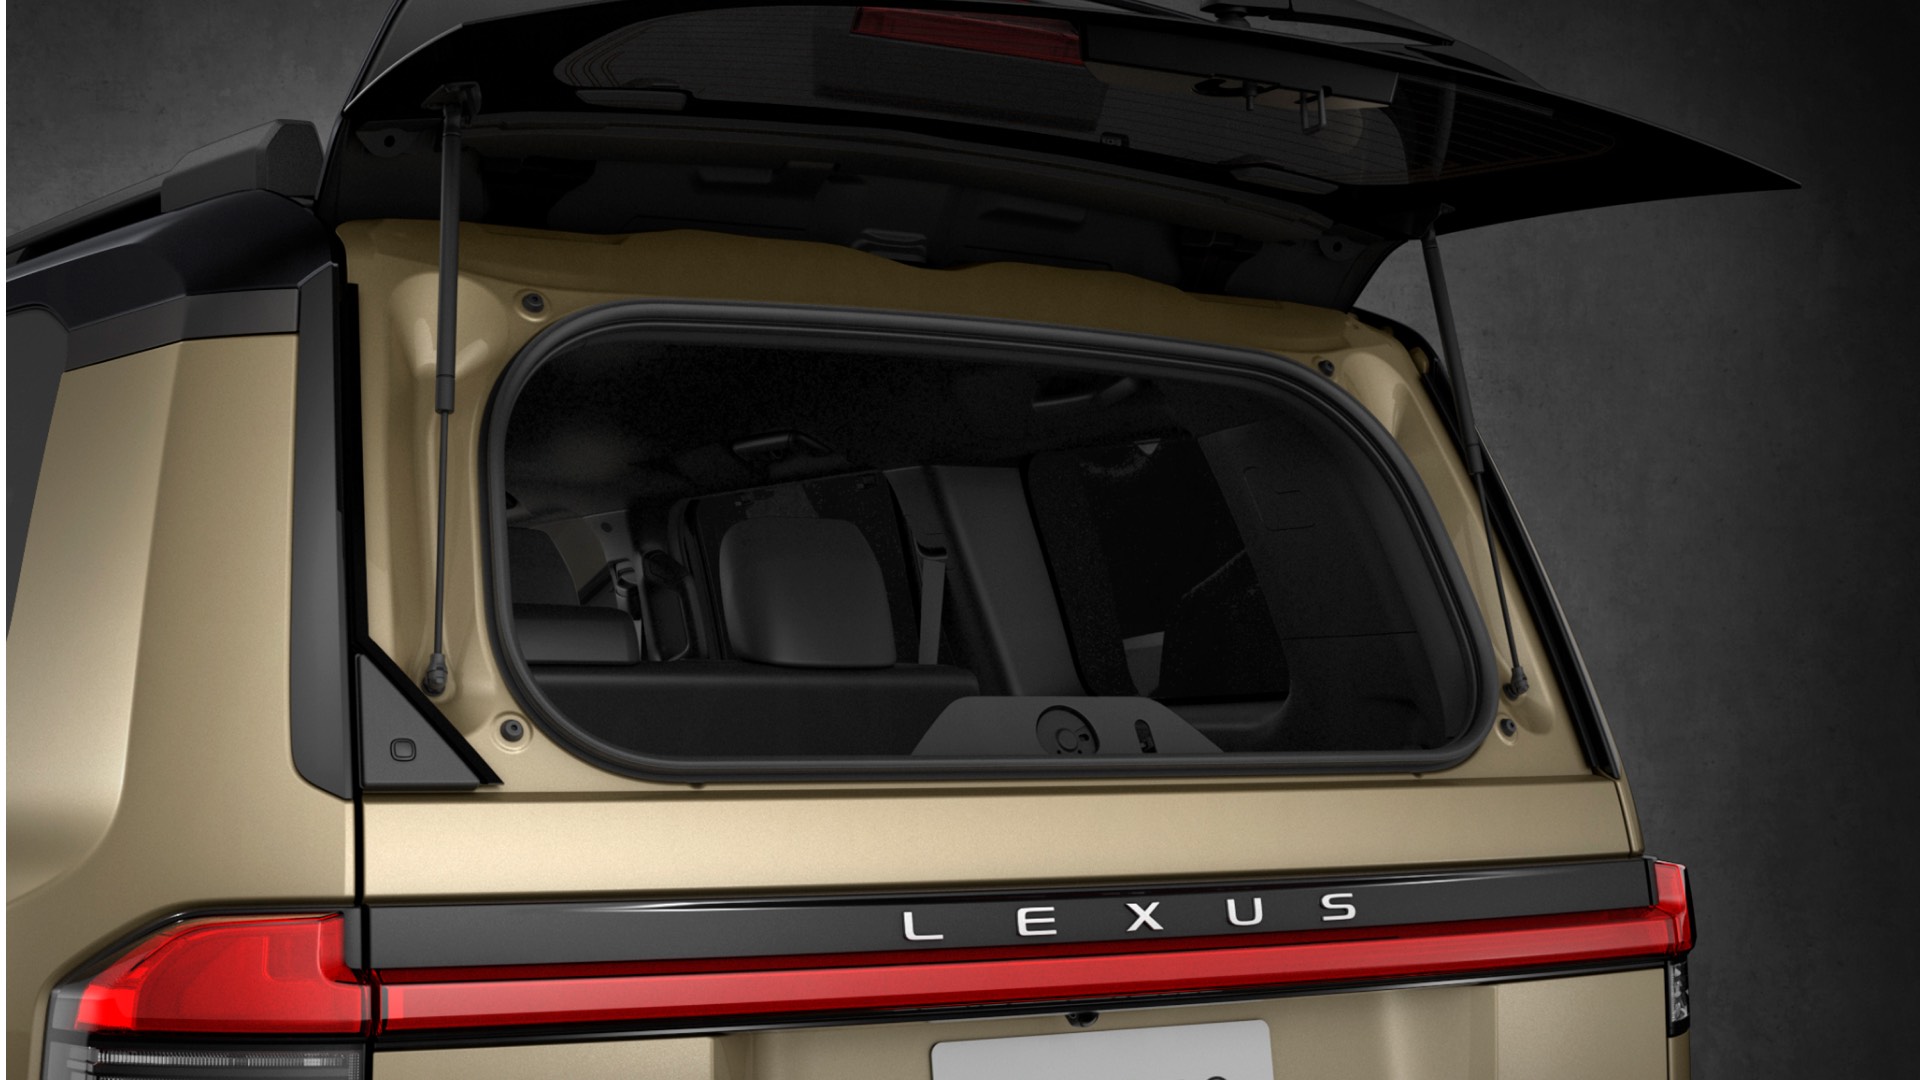 The cargo boot door of the Lexus GX is open.